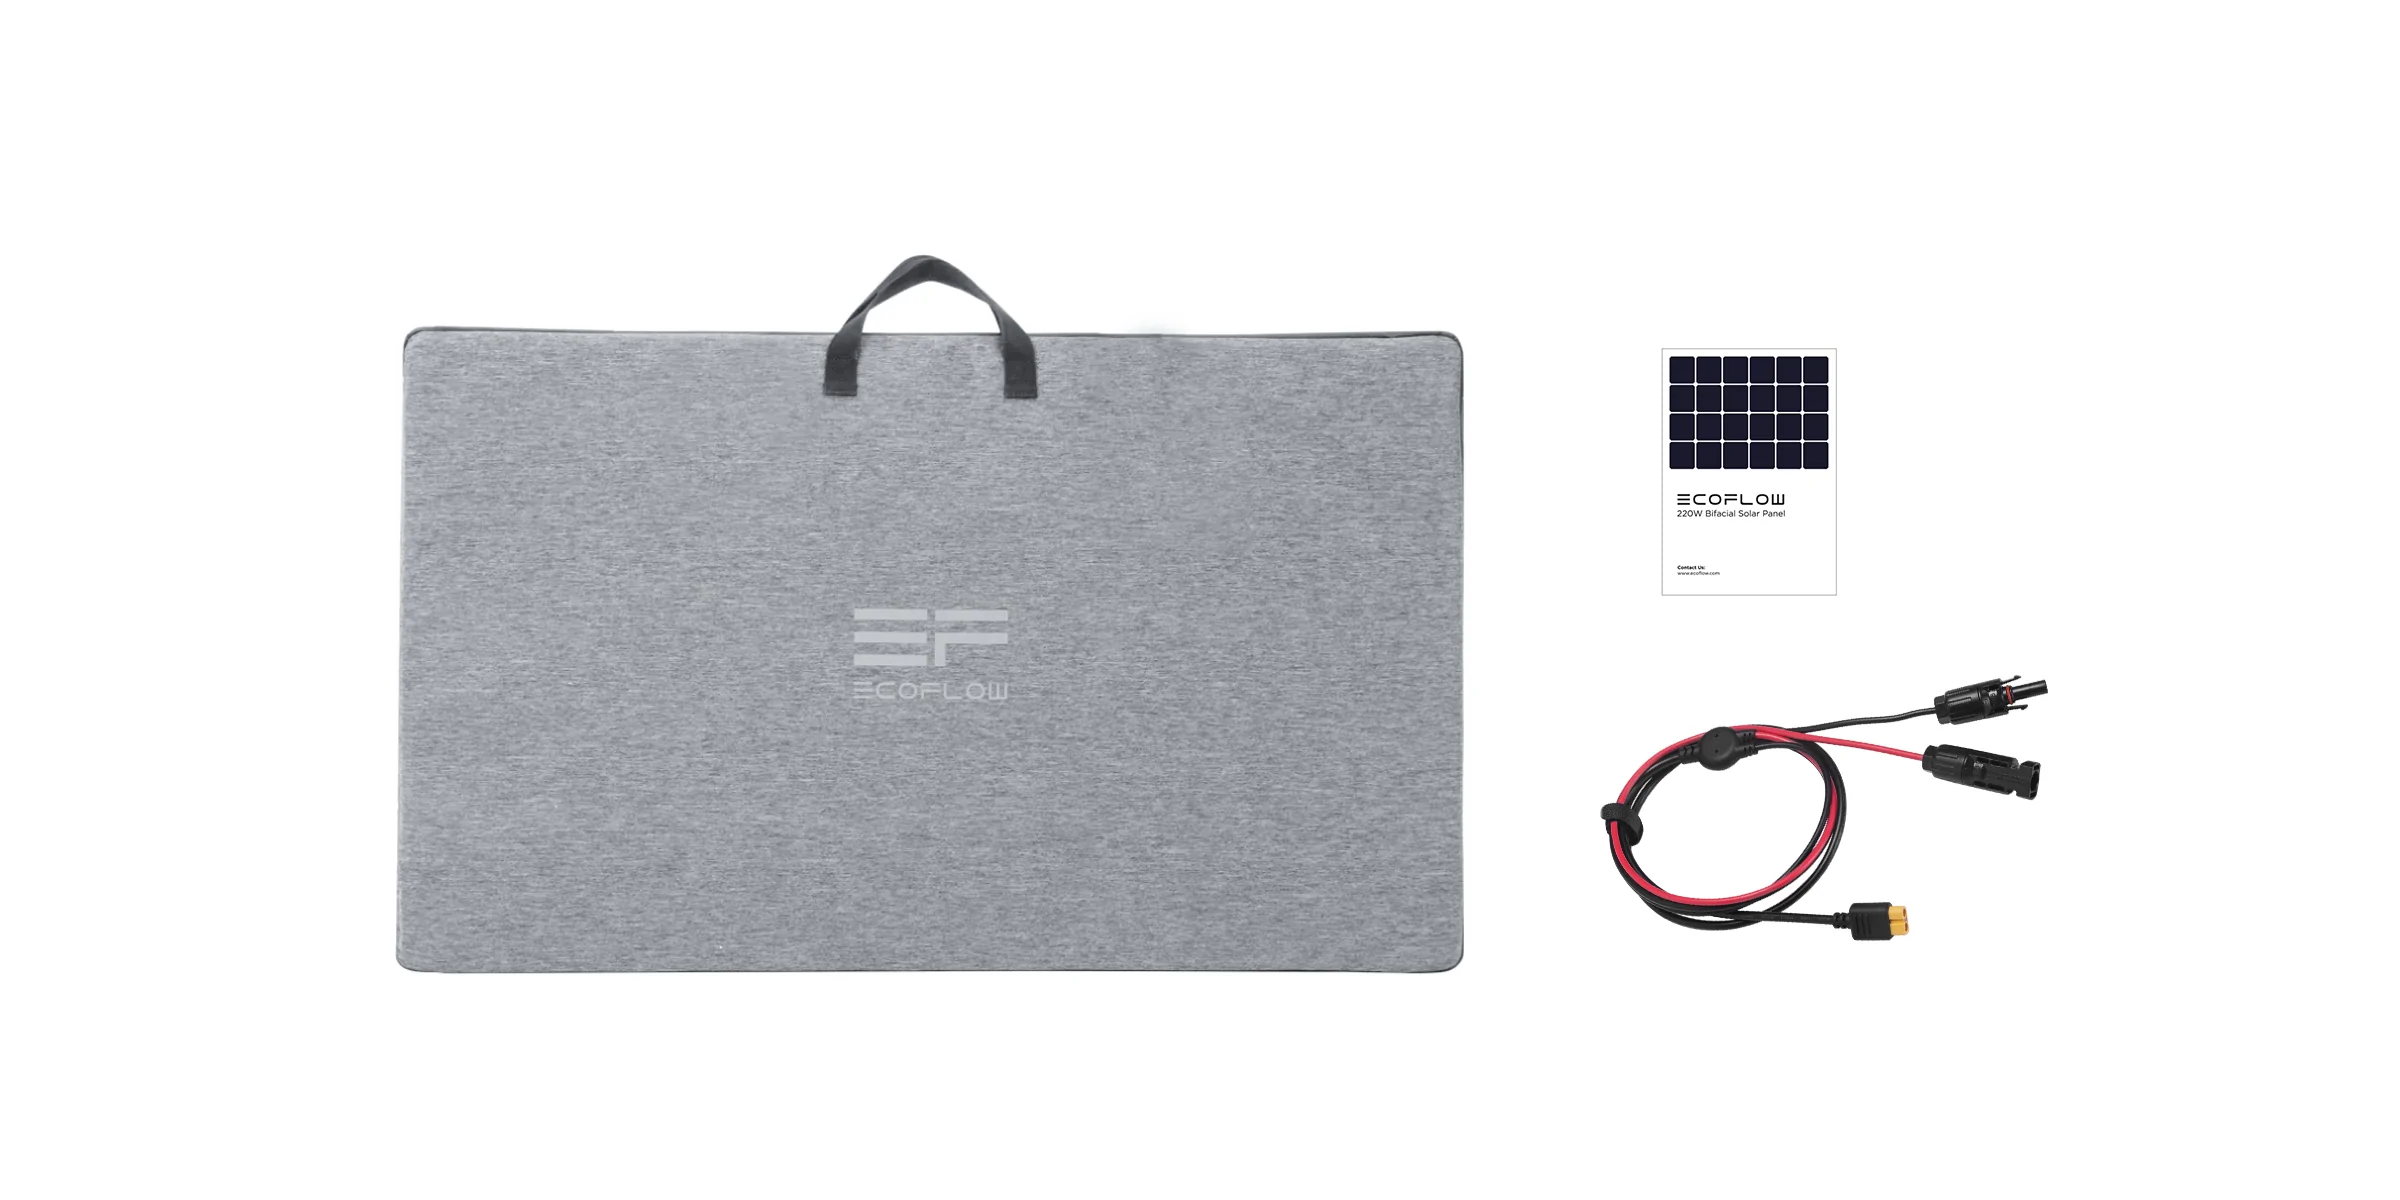 Портативная зарядная станция EcoFlow DELTA Max(1600) + 220W Solar Panel цена 113999.00 грн - фотография 2